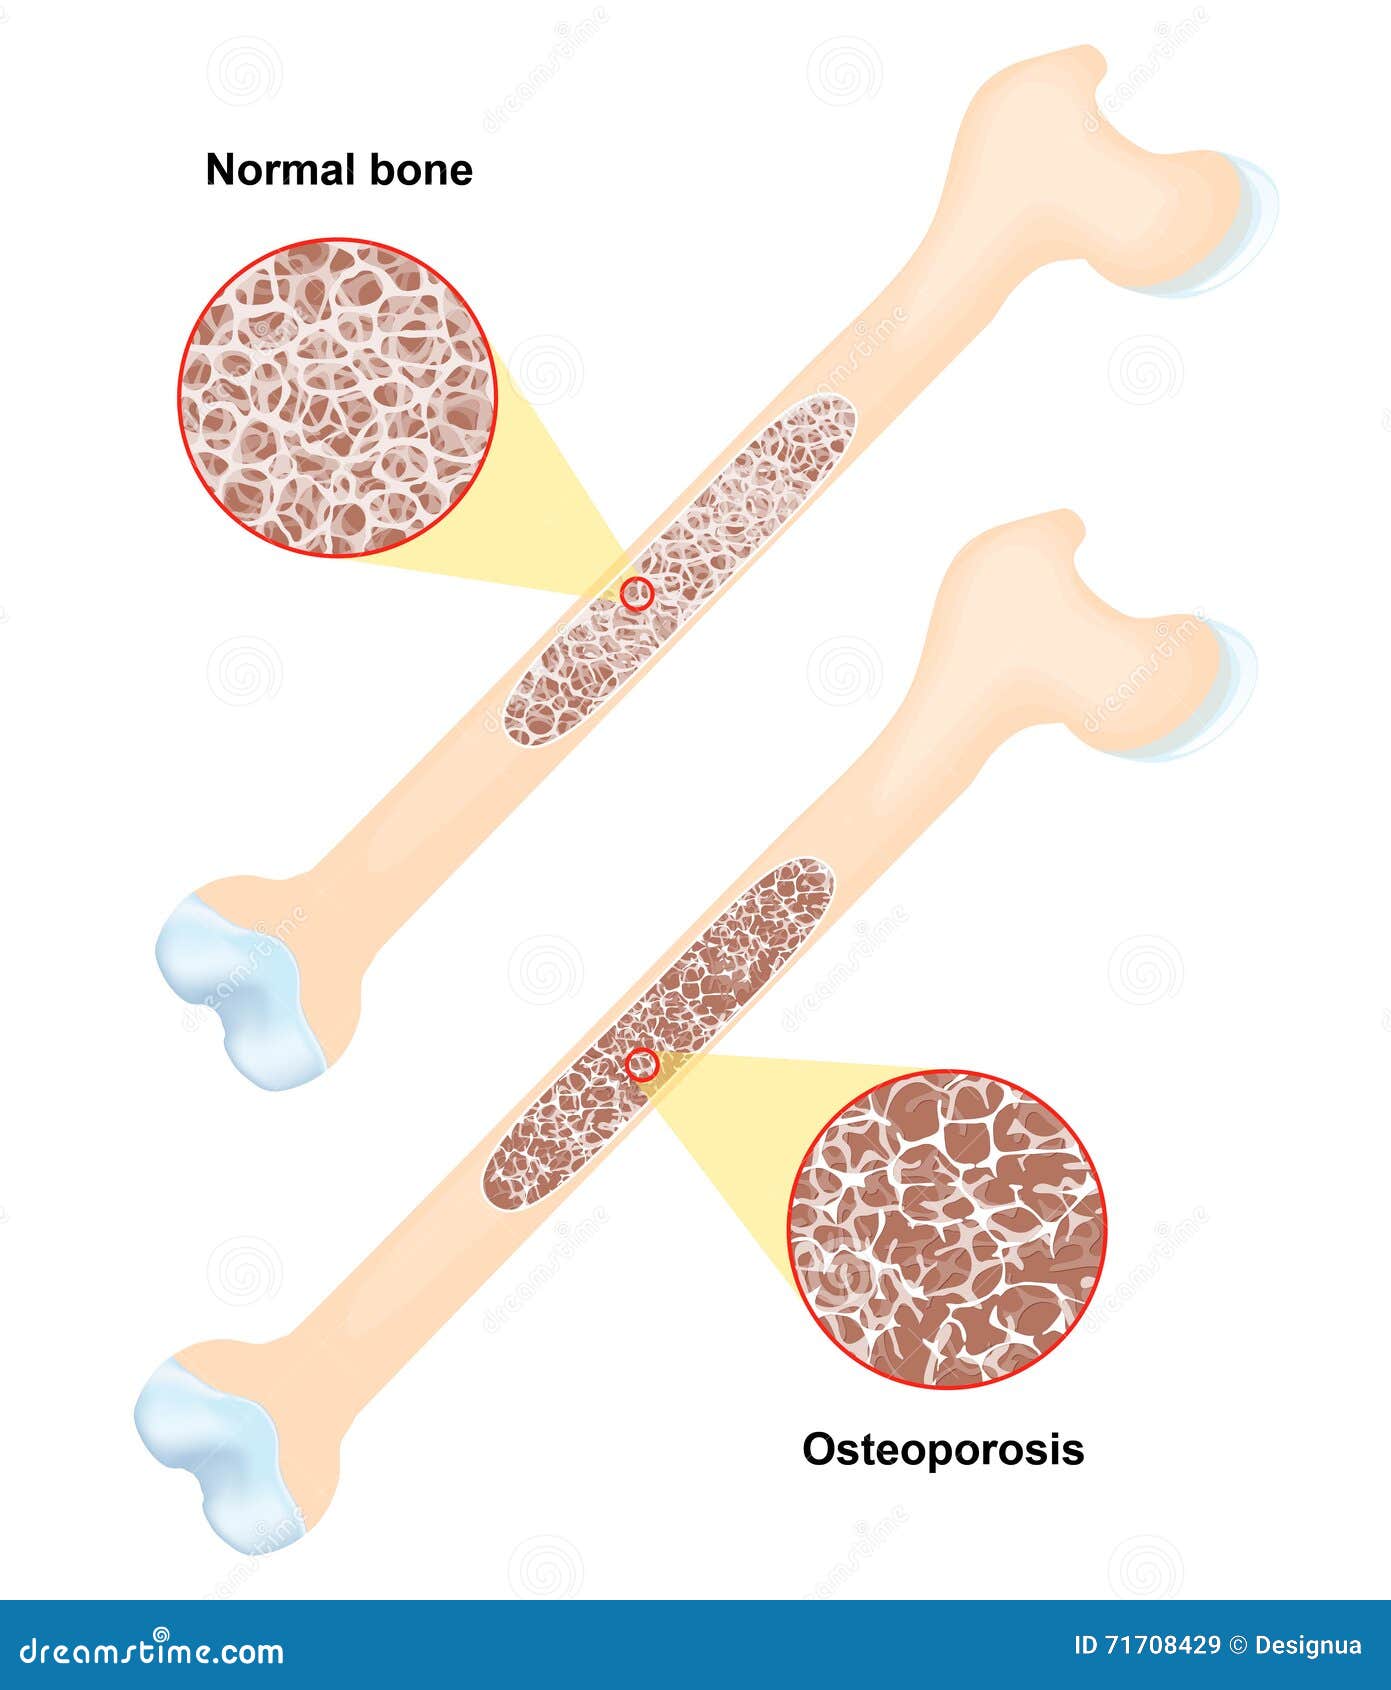 osteoporosis. disease of bones